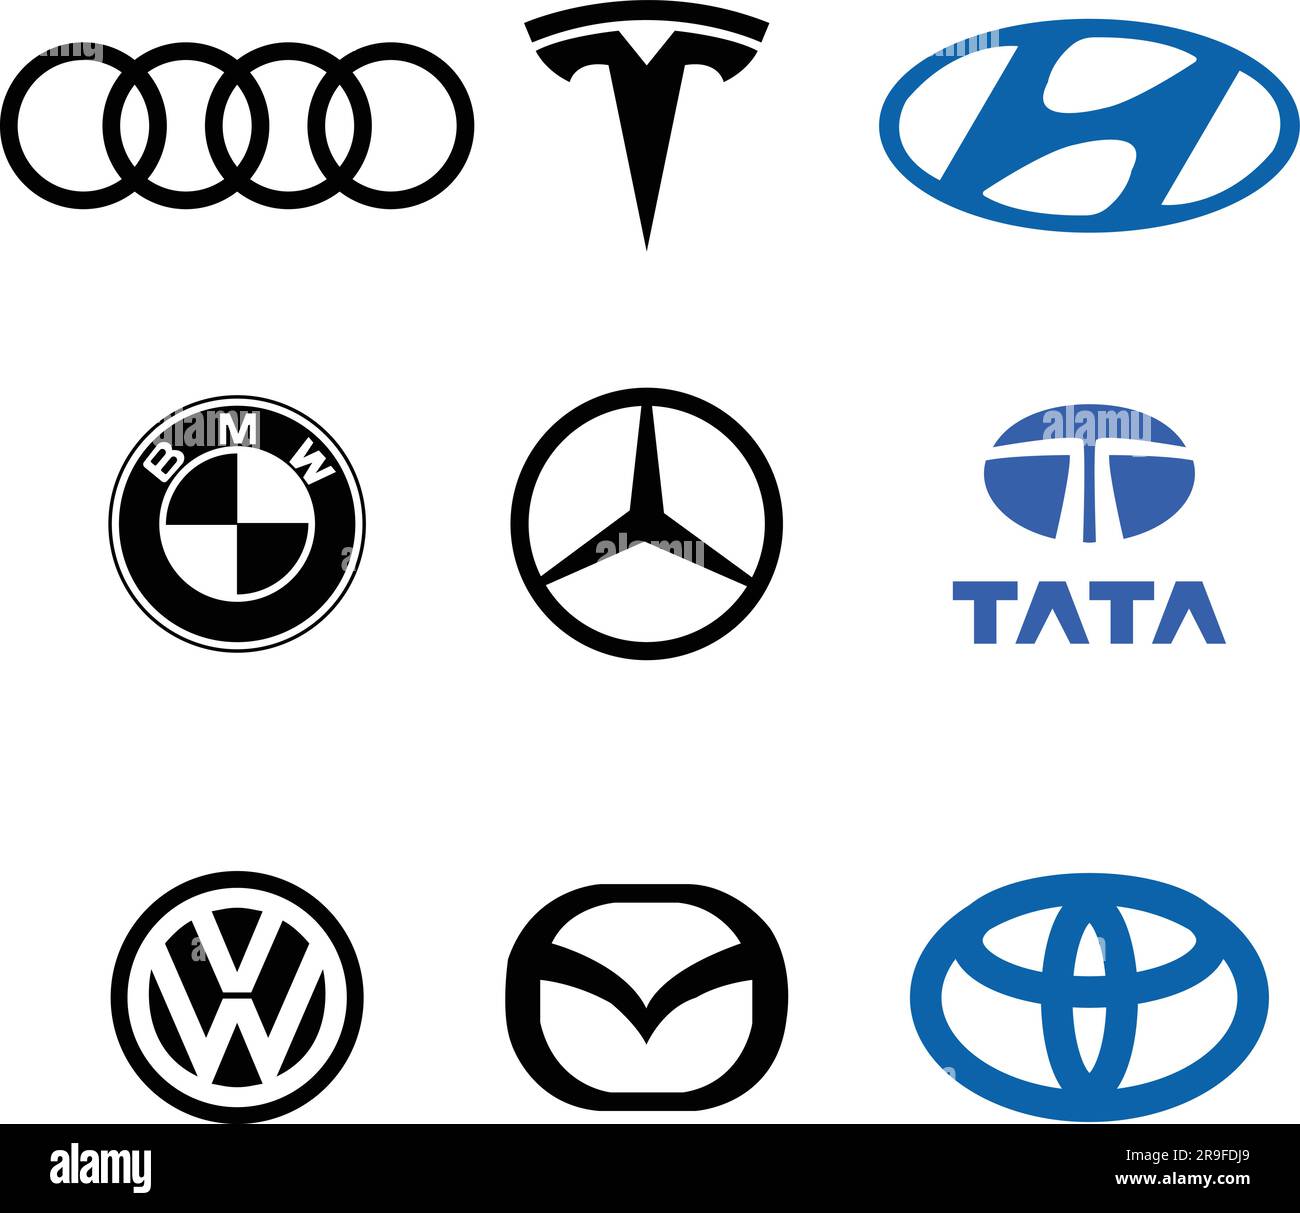 BMW, Volkswagen, Toyota, Audi, Mercedes, Tesla, Mazda, Tata, Hyundai, logo icône symbole de marque de voiture célèbre étiquette style d'identité Top Automotive. BLAC Illustration de Vecteur